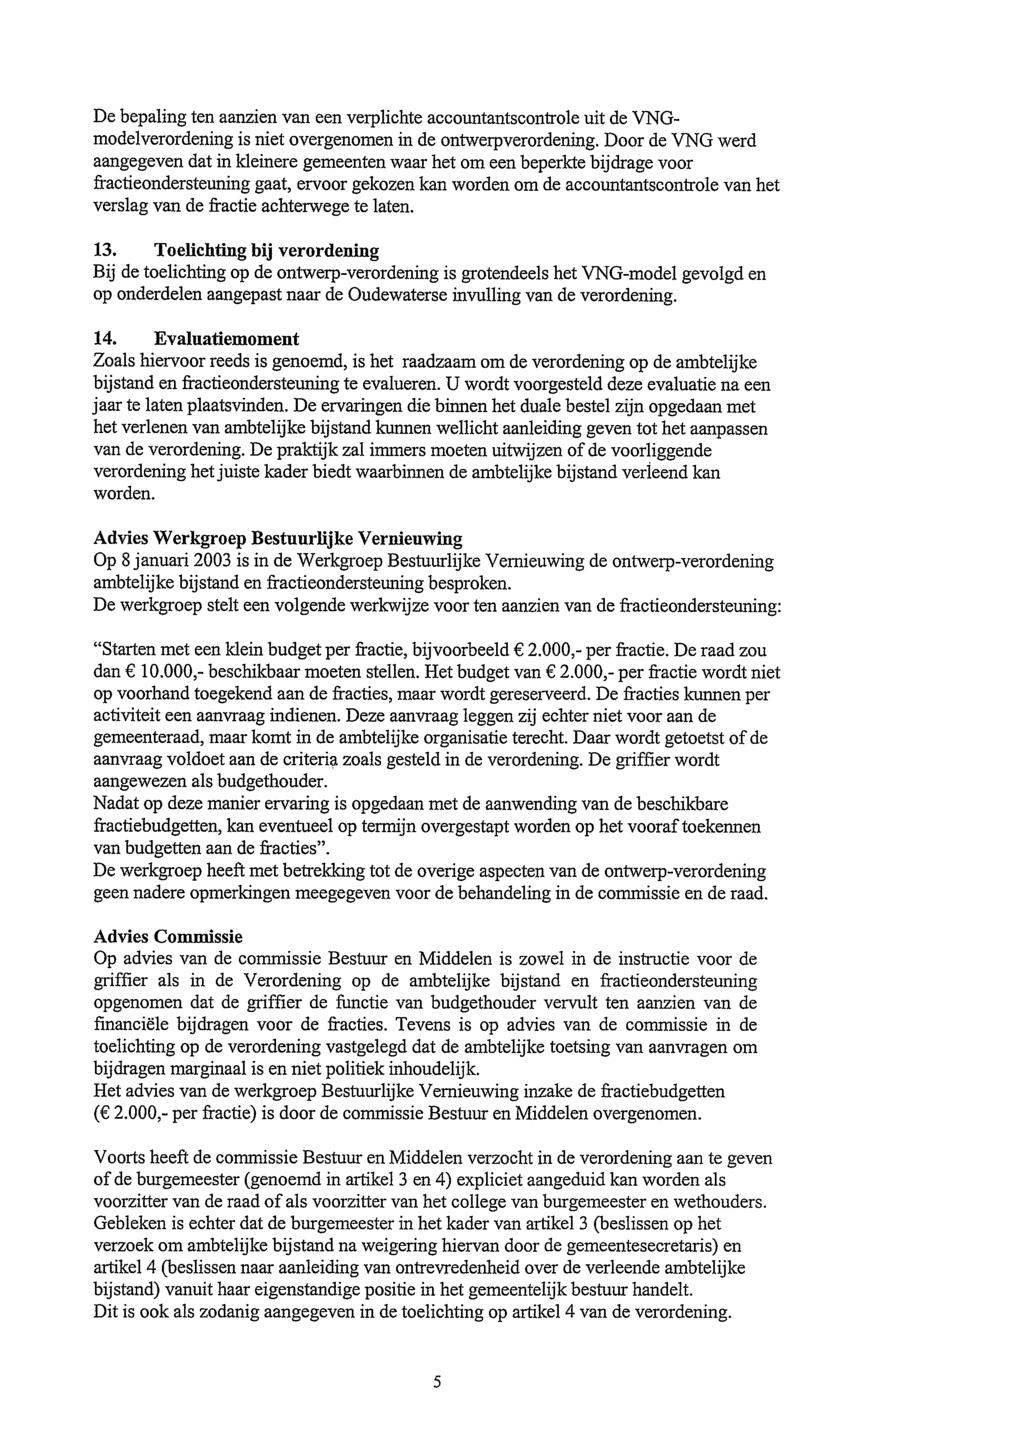 Scan nummer 1 van 1 - Scanpagina 5 van 14 De bepaling ten aanzien van een verplichte accountantscontrole uit de VNGmodelverordening is niet overgenomen in de ontwerpverordening.